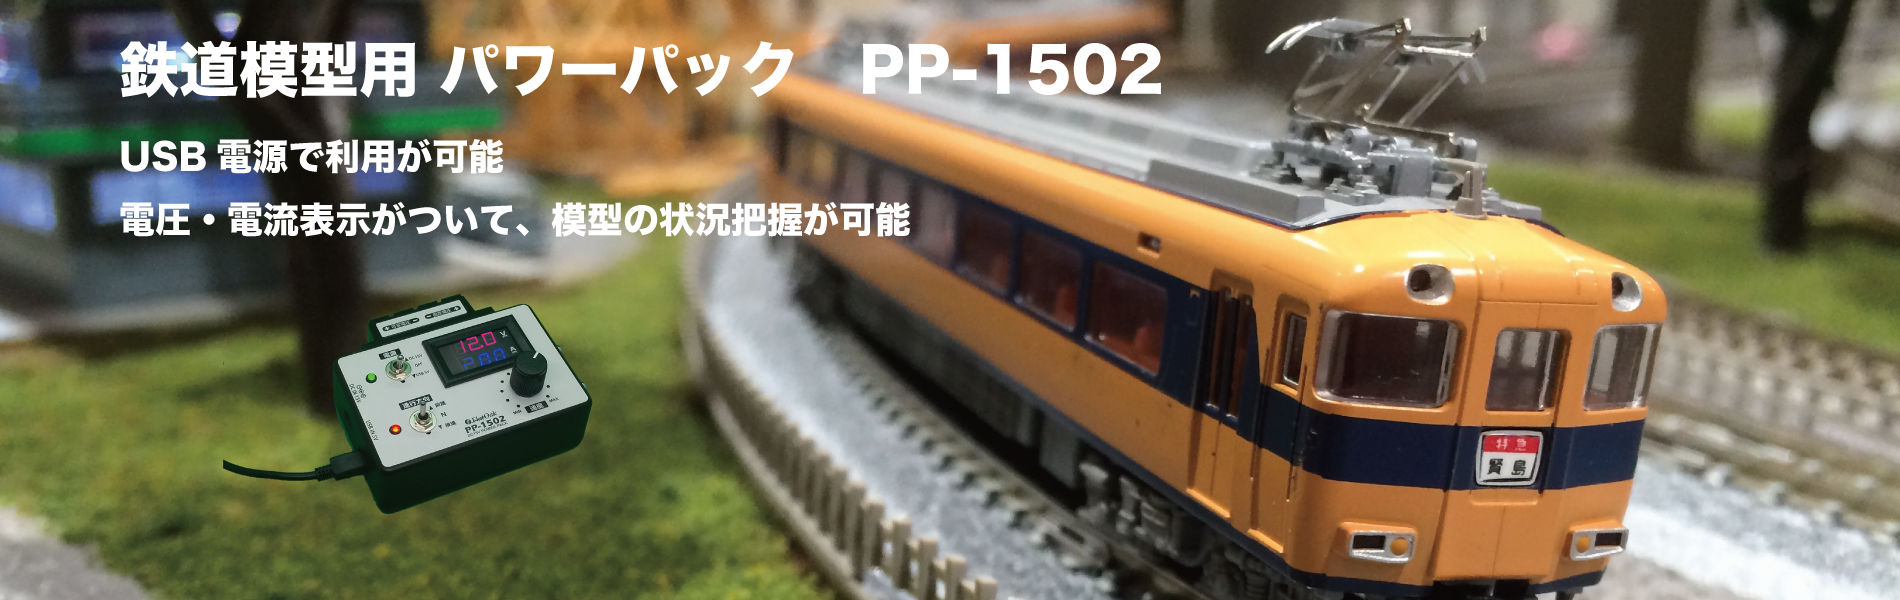 鉄道模型用パワーパック(PP-1502)